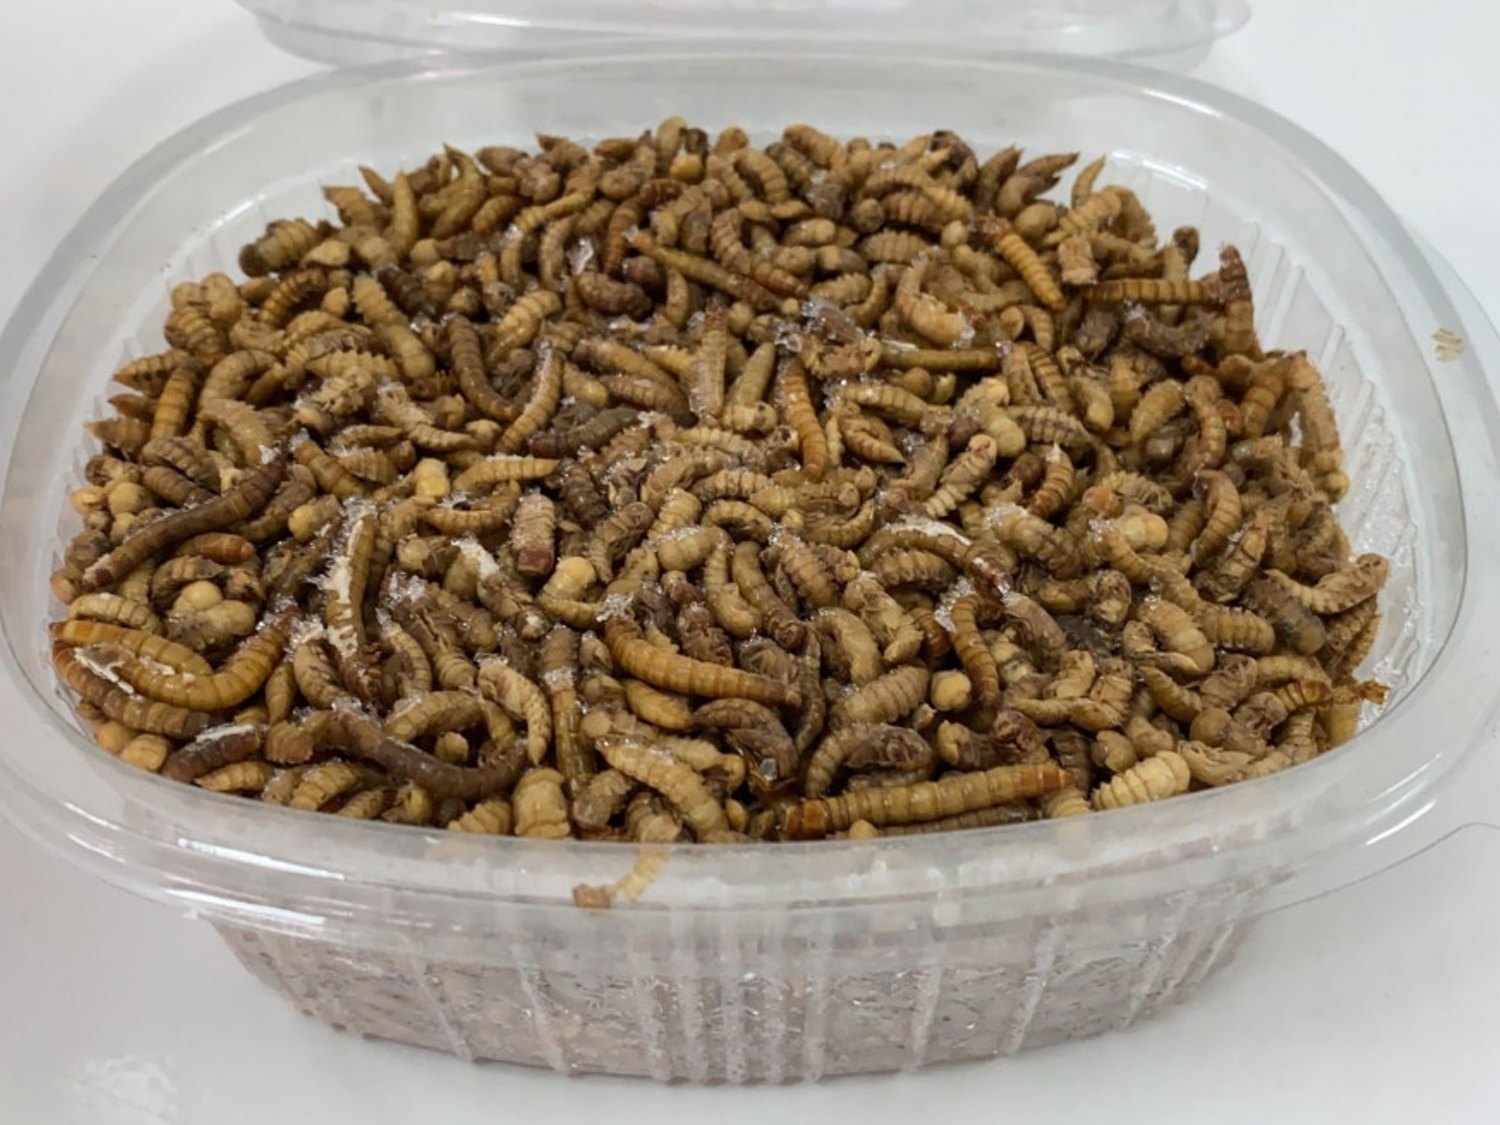 Gusano de harina: La Unión Europea autoriza por primera vez un insecto como alimento